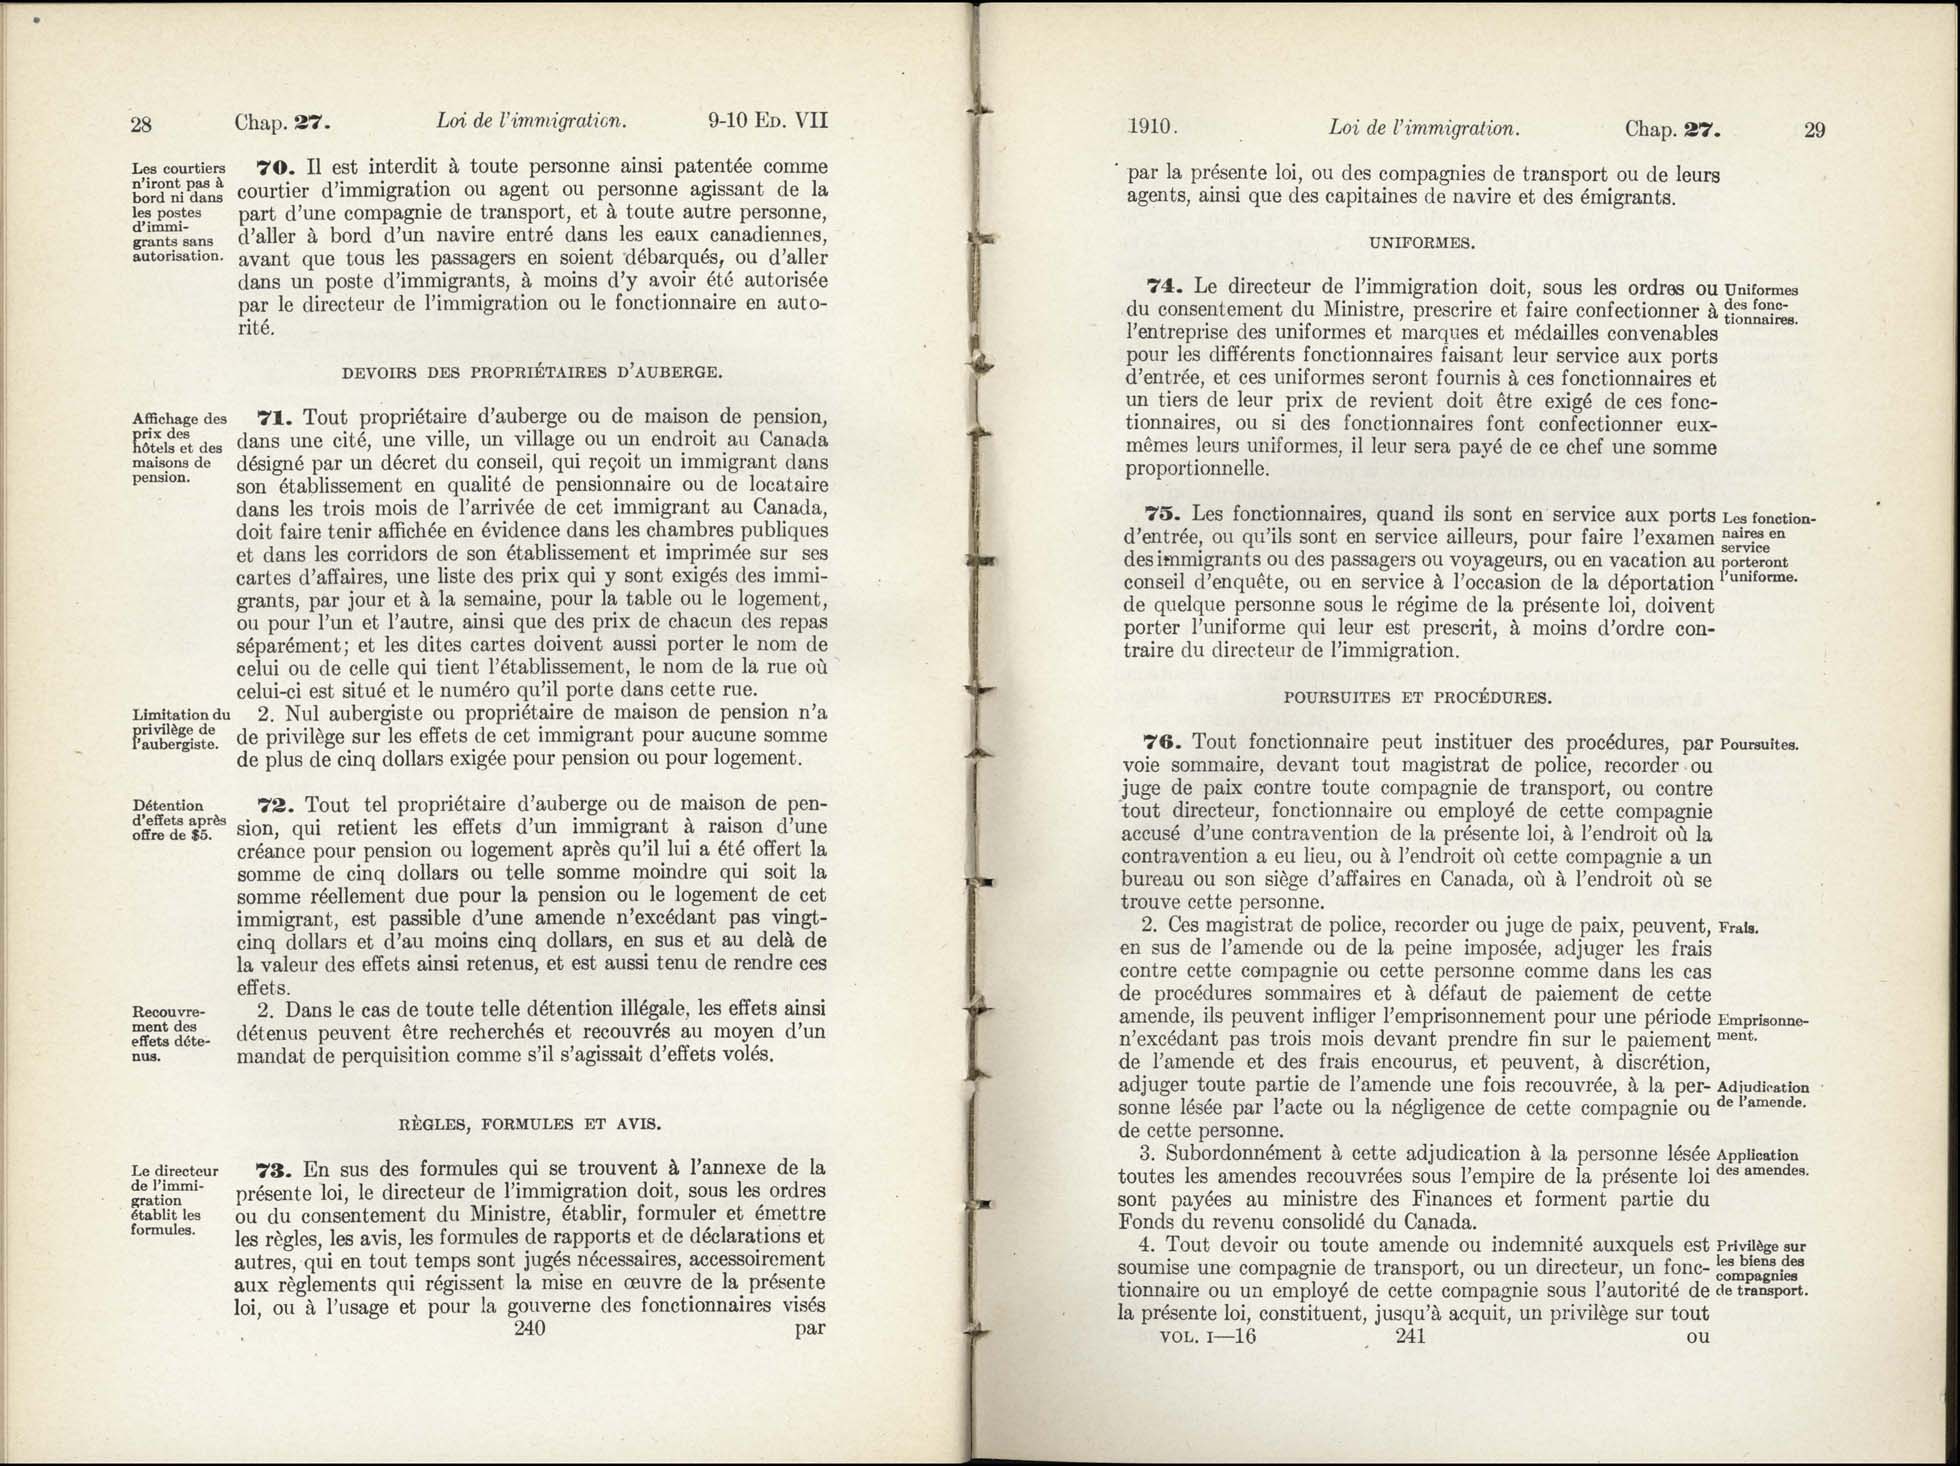 Chap 27 Page 240, 241 L’Acte d’immigration, 1910